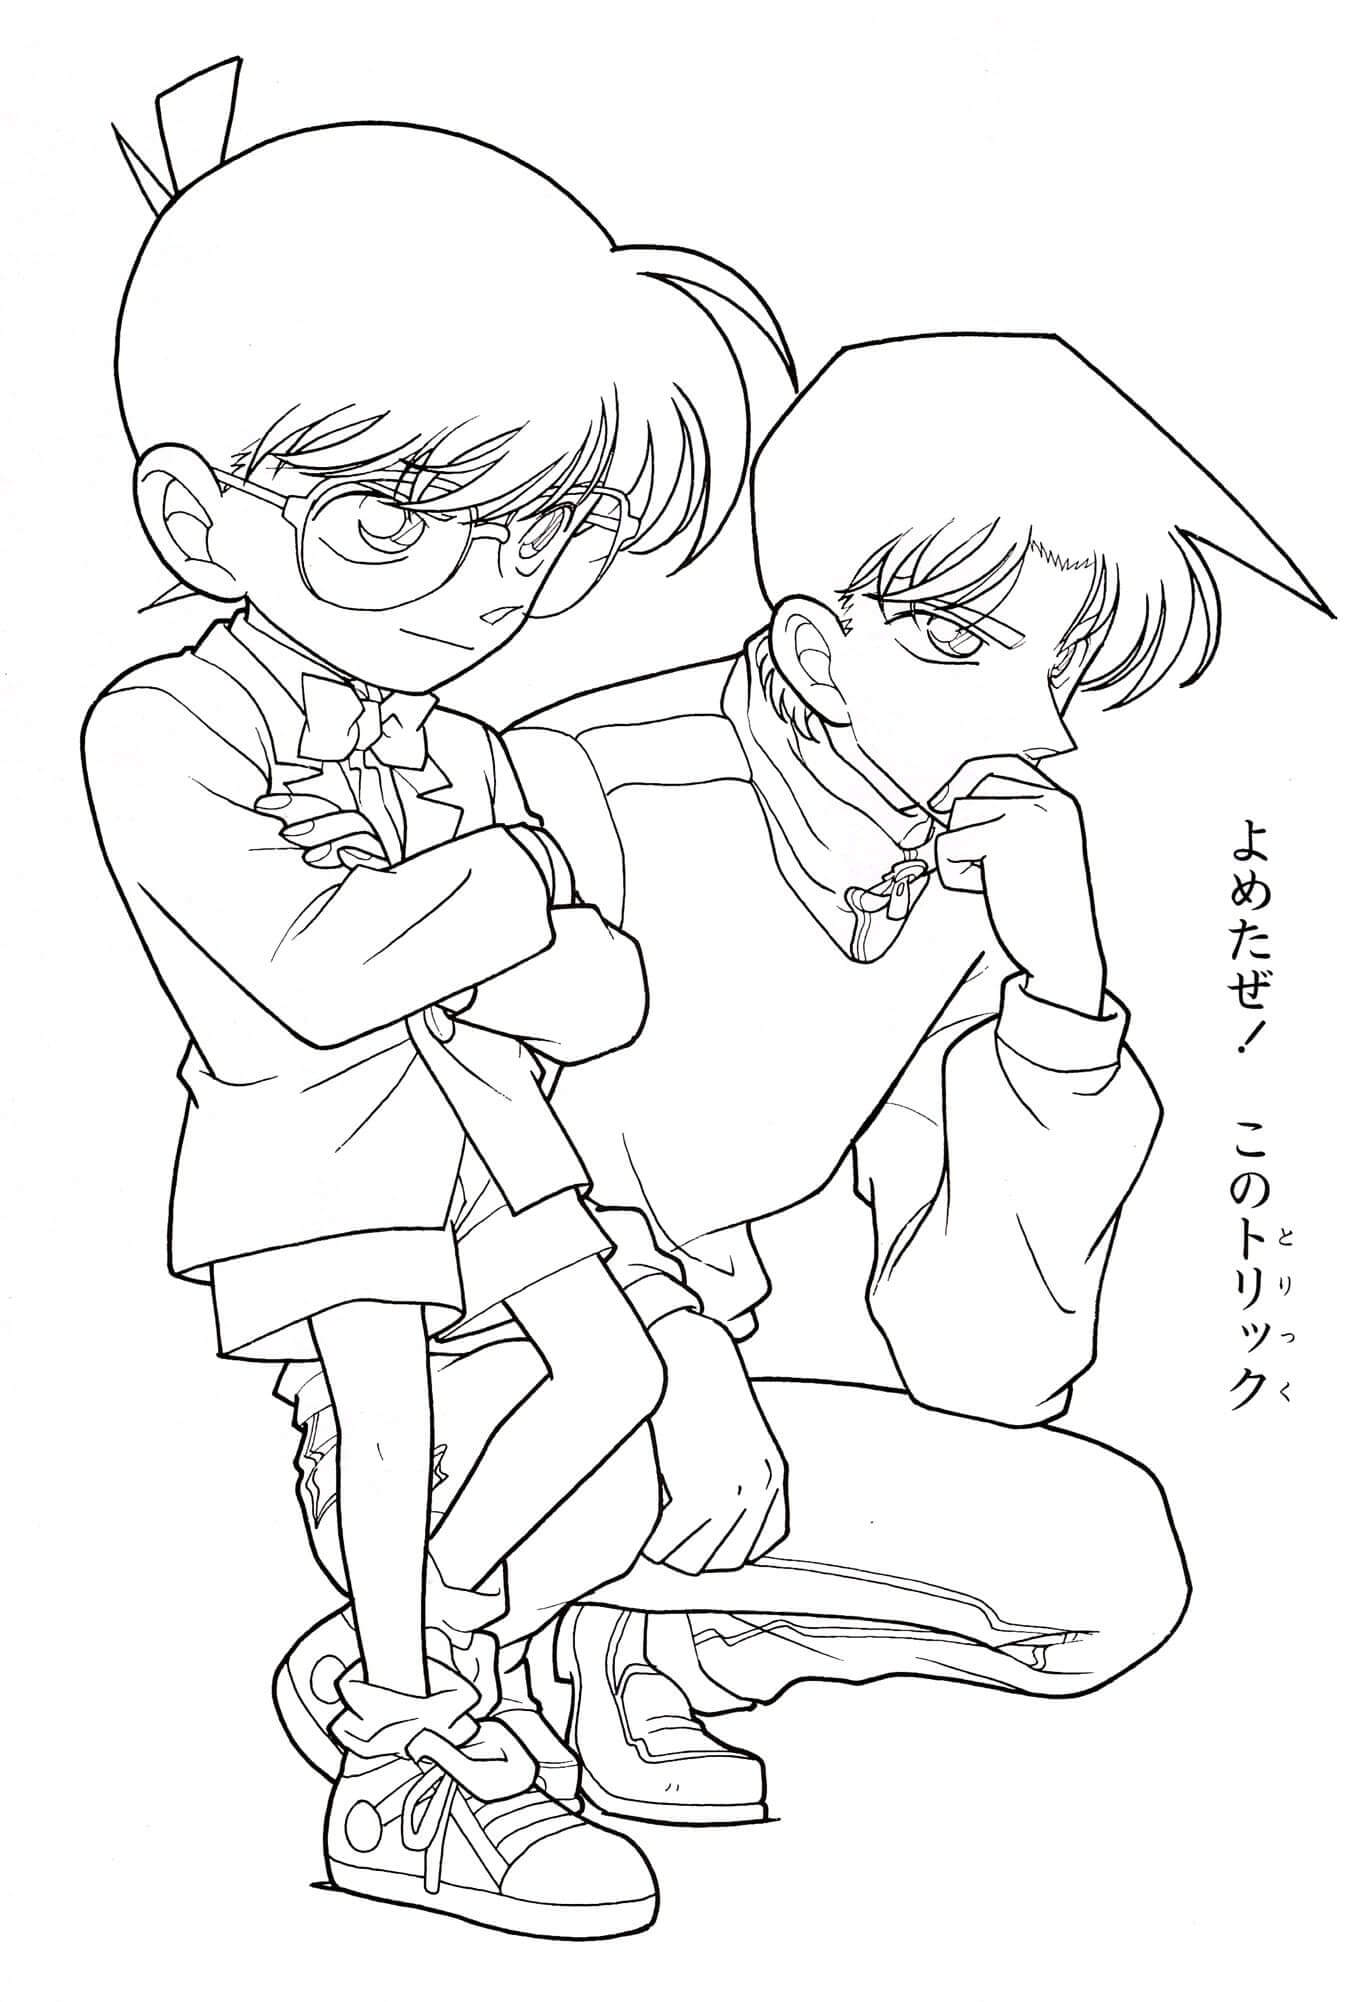 Conan y Shinichi